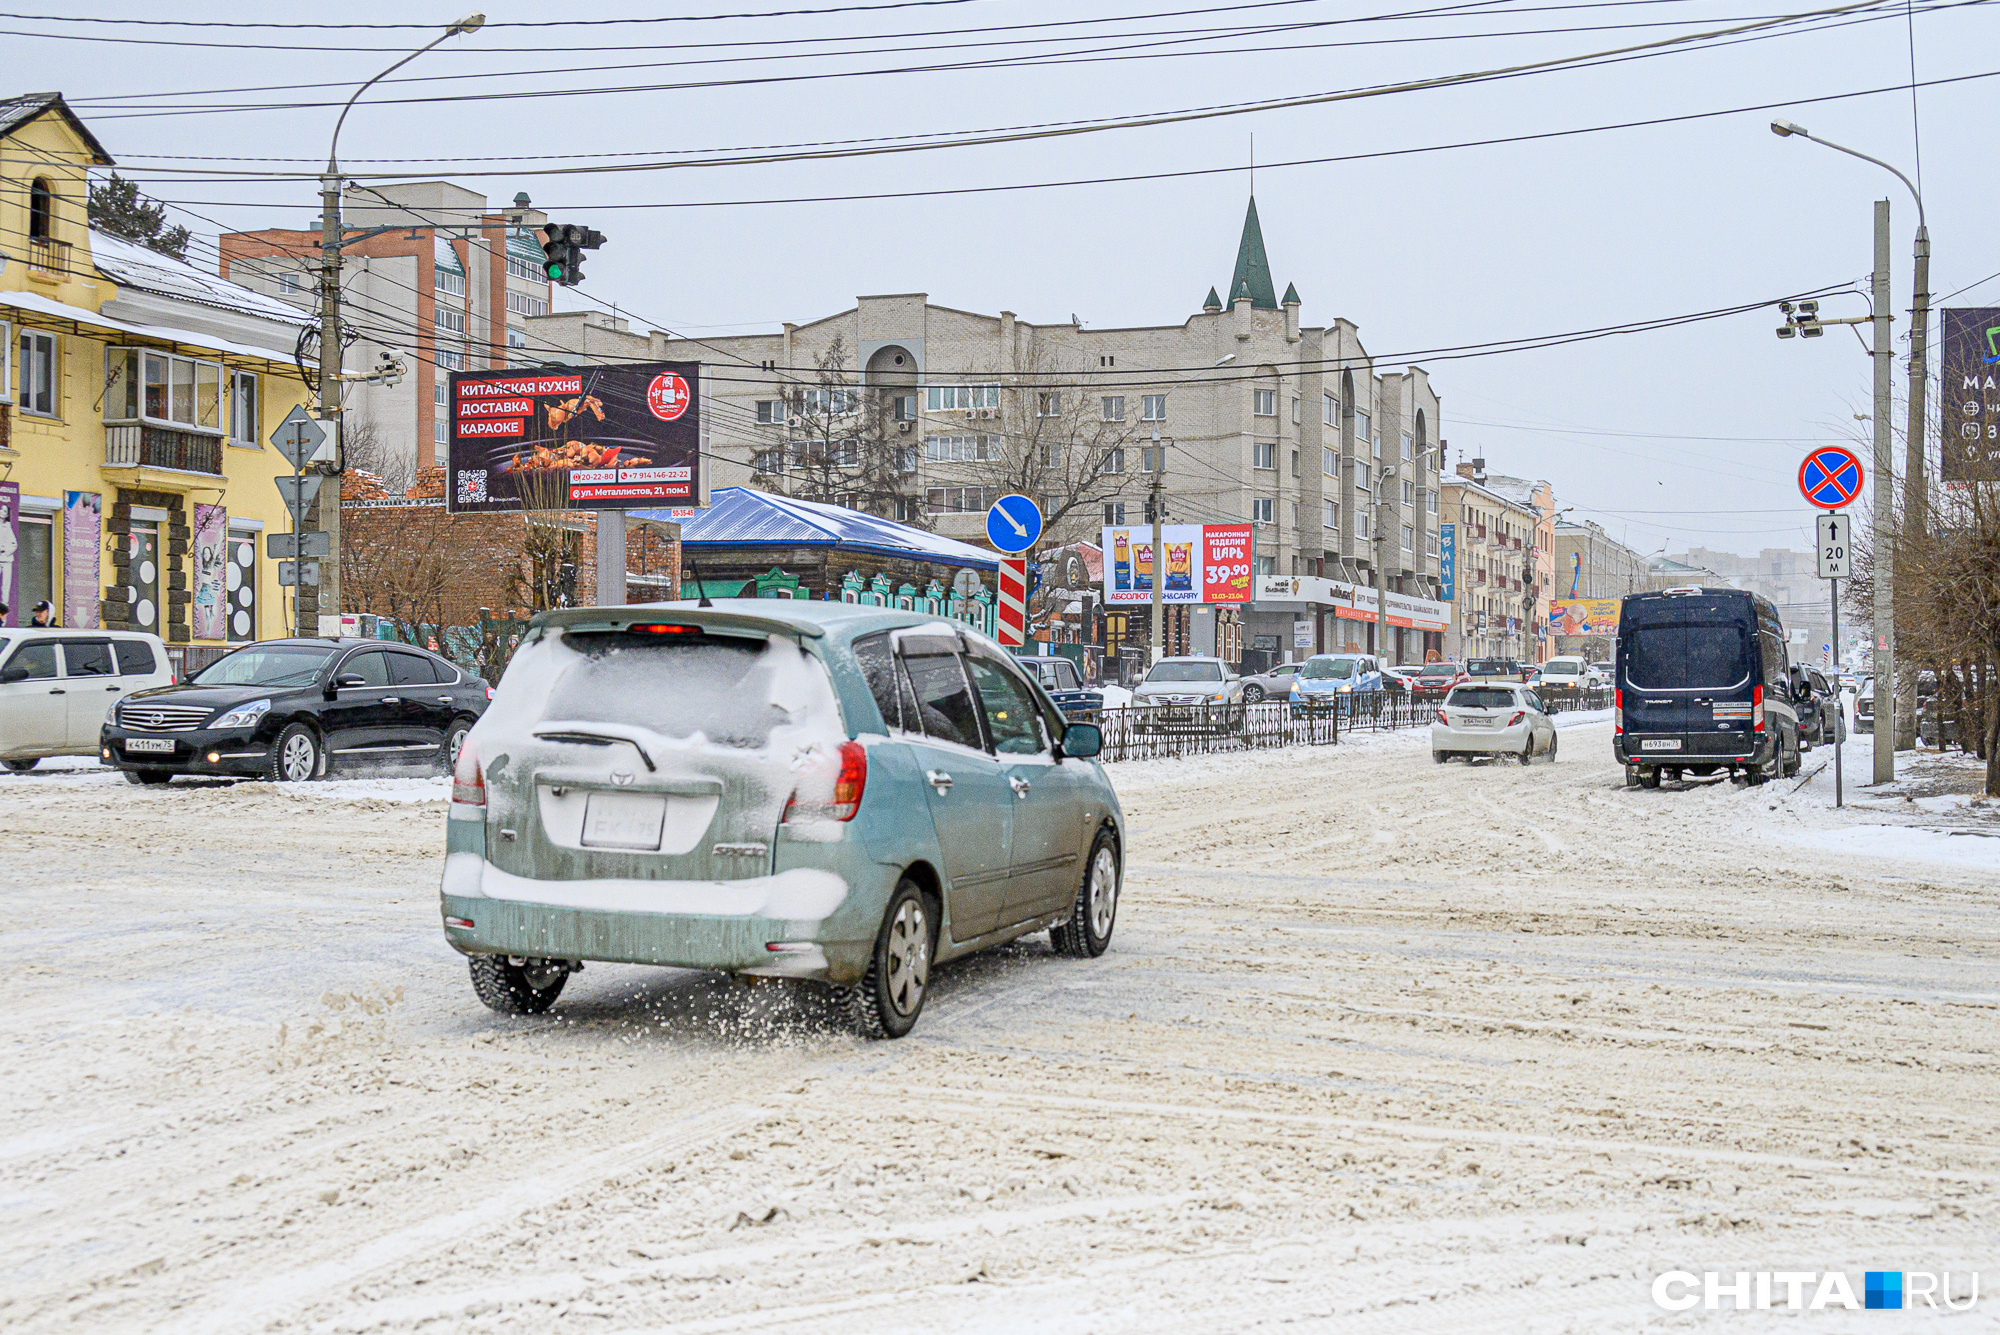 Улица Бабушкина, как и все другие улицы, — в снежной каше